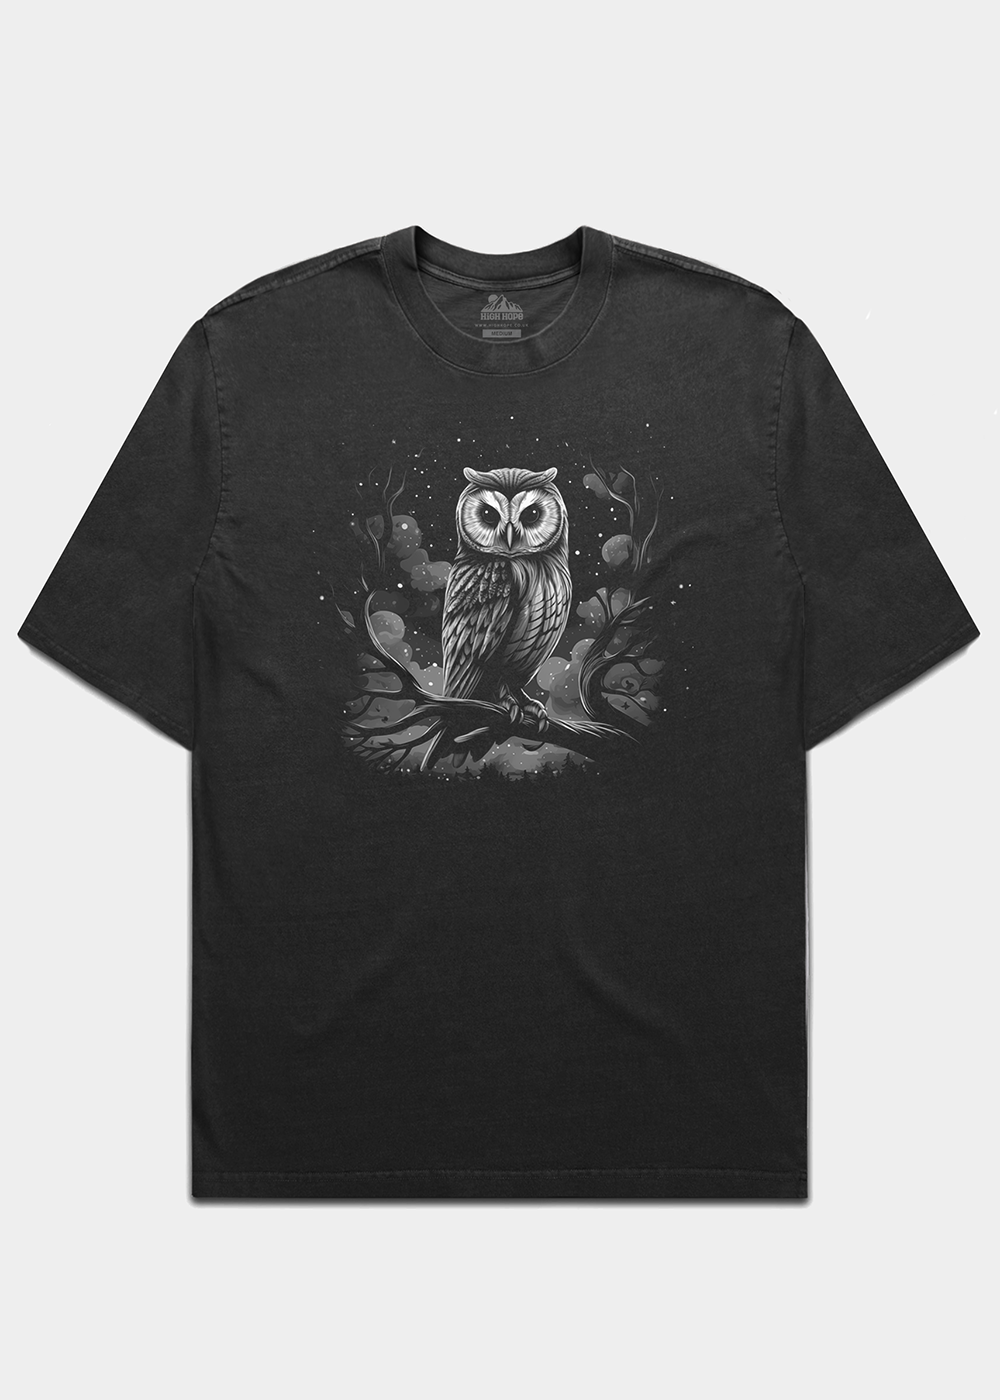 Owl Heavyweight T-shirt / Front Print